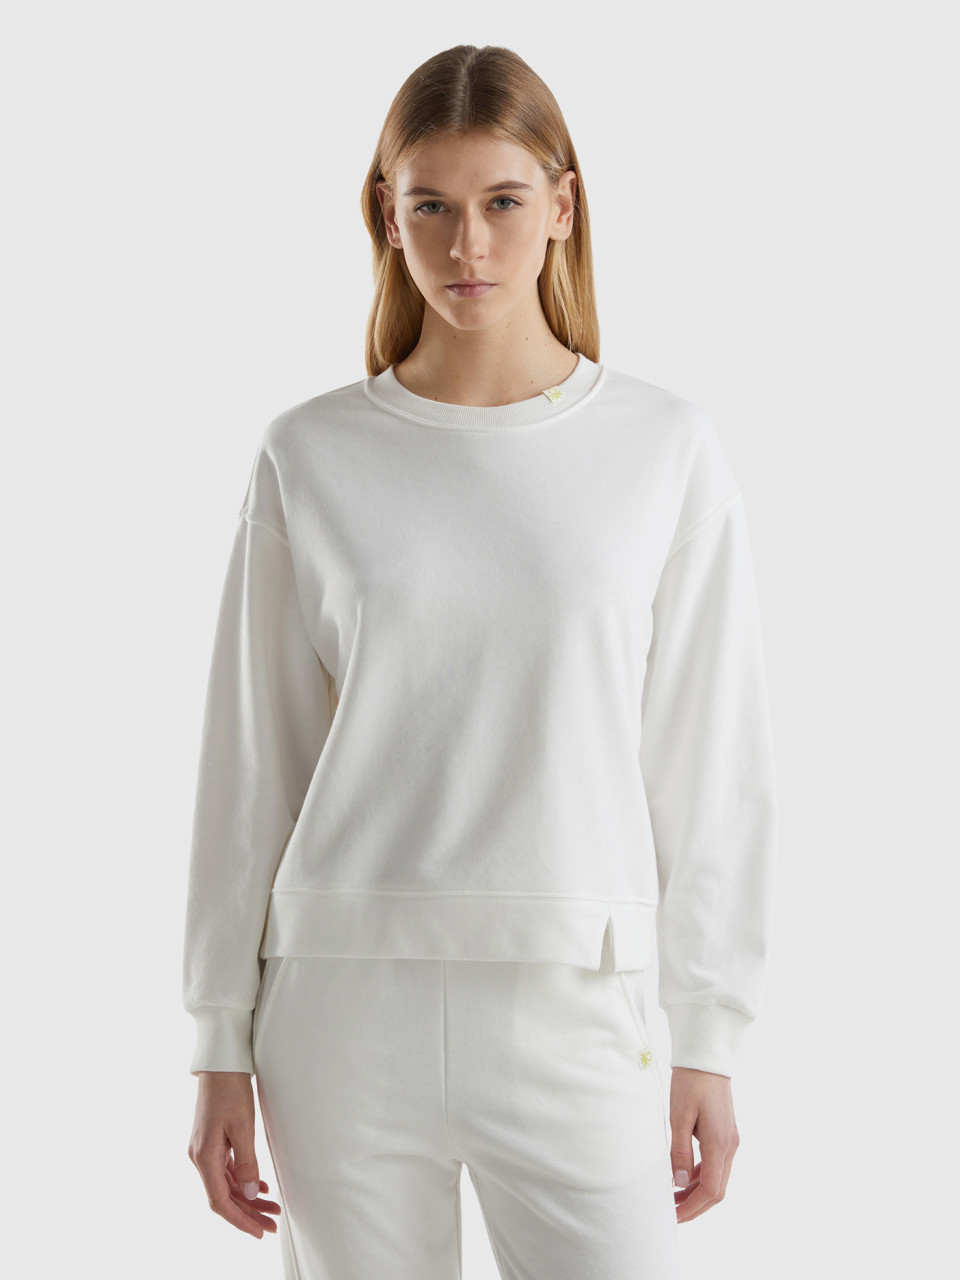 Benetton, Pullover Sweatshirt In Cotton Blend, Creamy White, Women